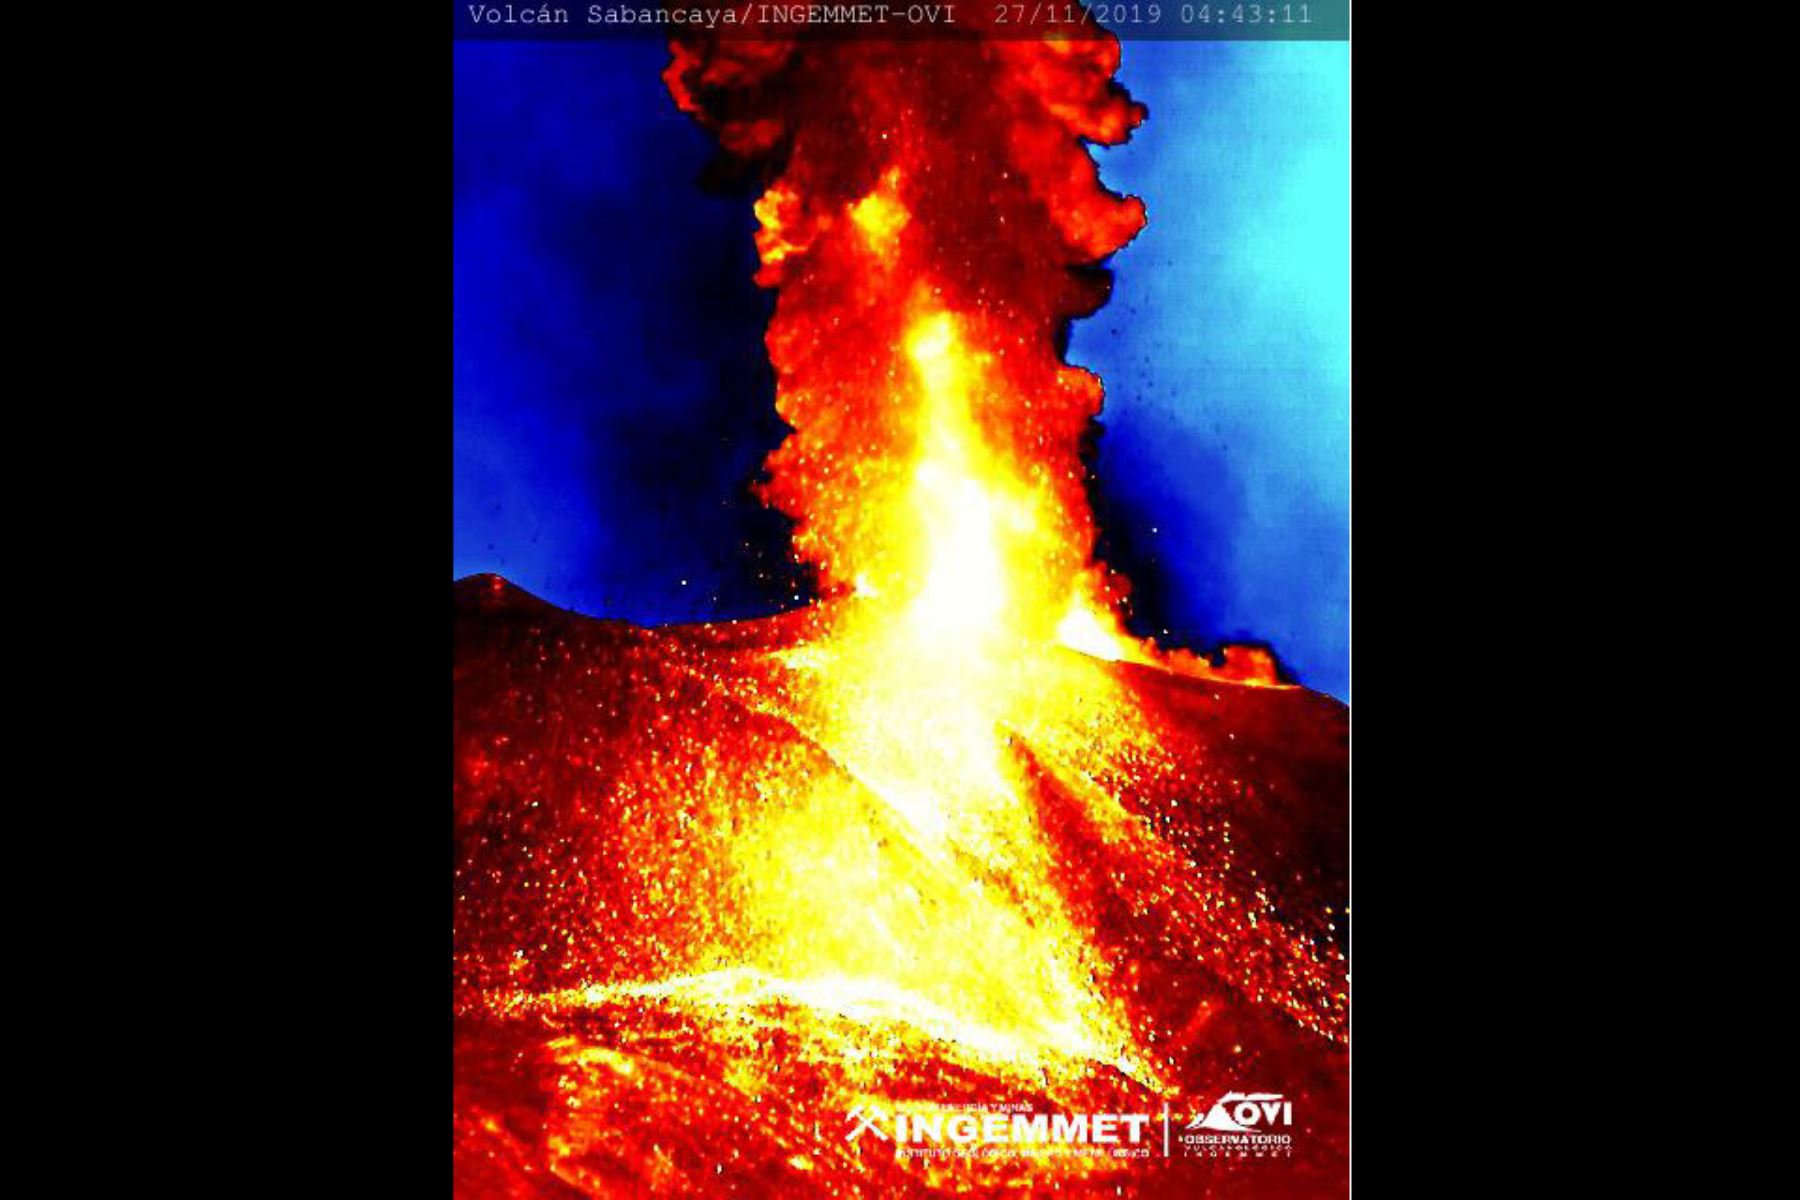 En las últimas 24 horas, el volcán Sabancaya tuvo 15 explosiones con una altura máxima de 2,700 metros sobre el cráter. Foto: Ingemmet